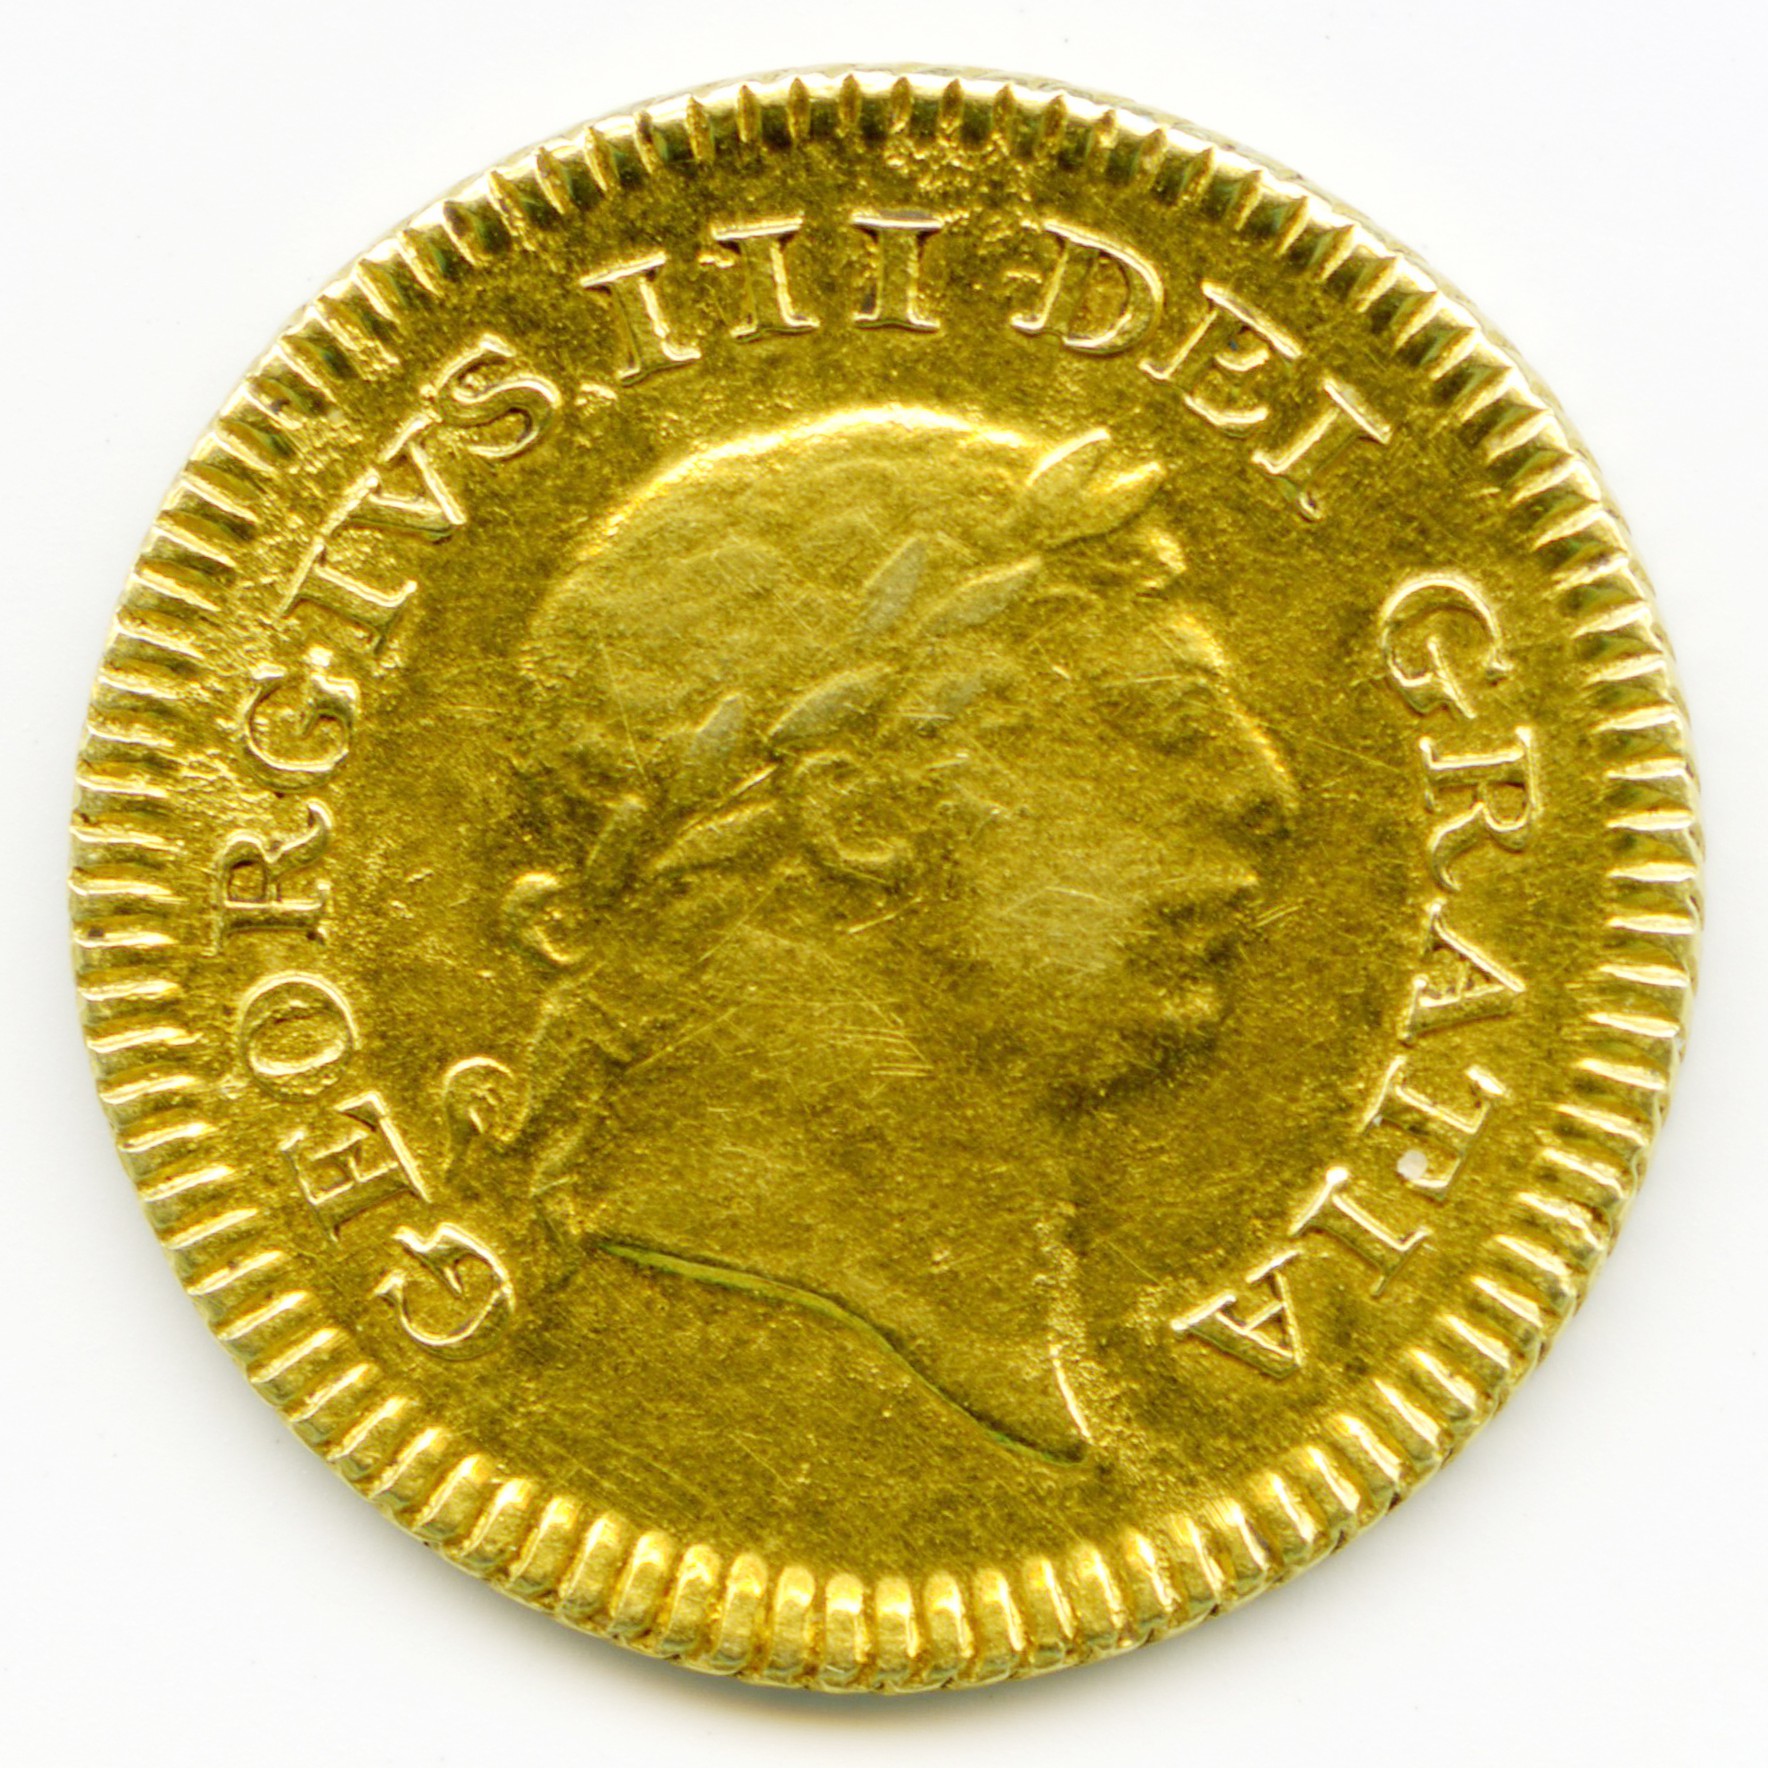 Grande-Bretagne - 1/3 Guinée - 1804 avers